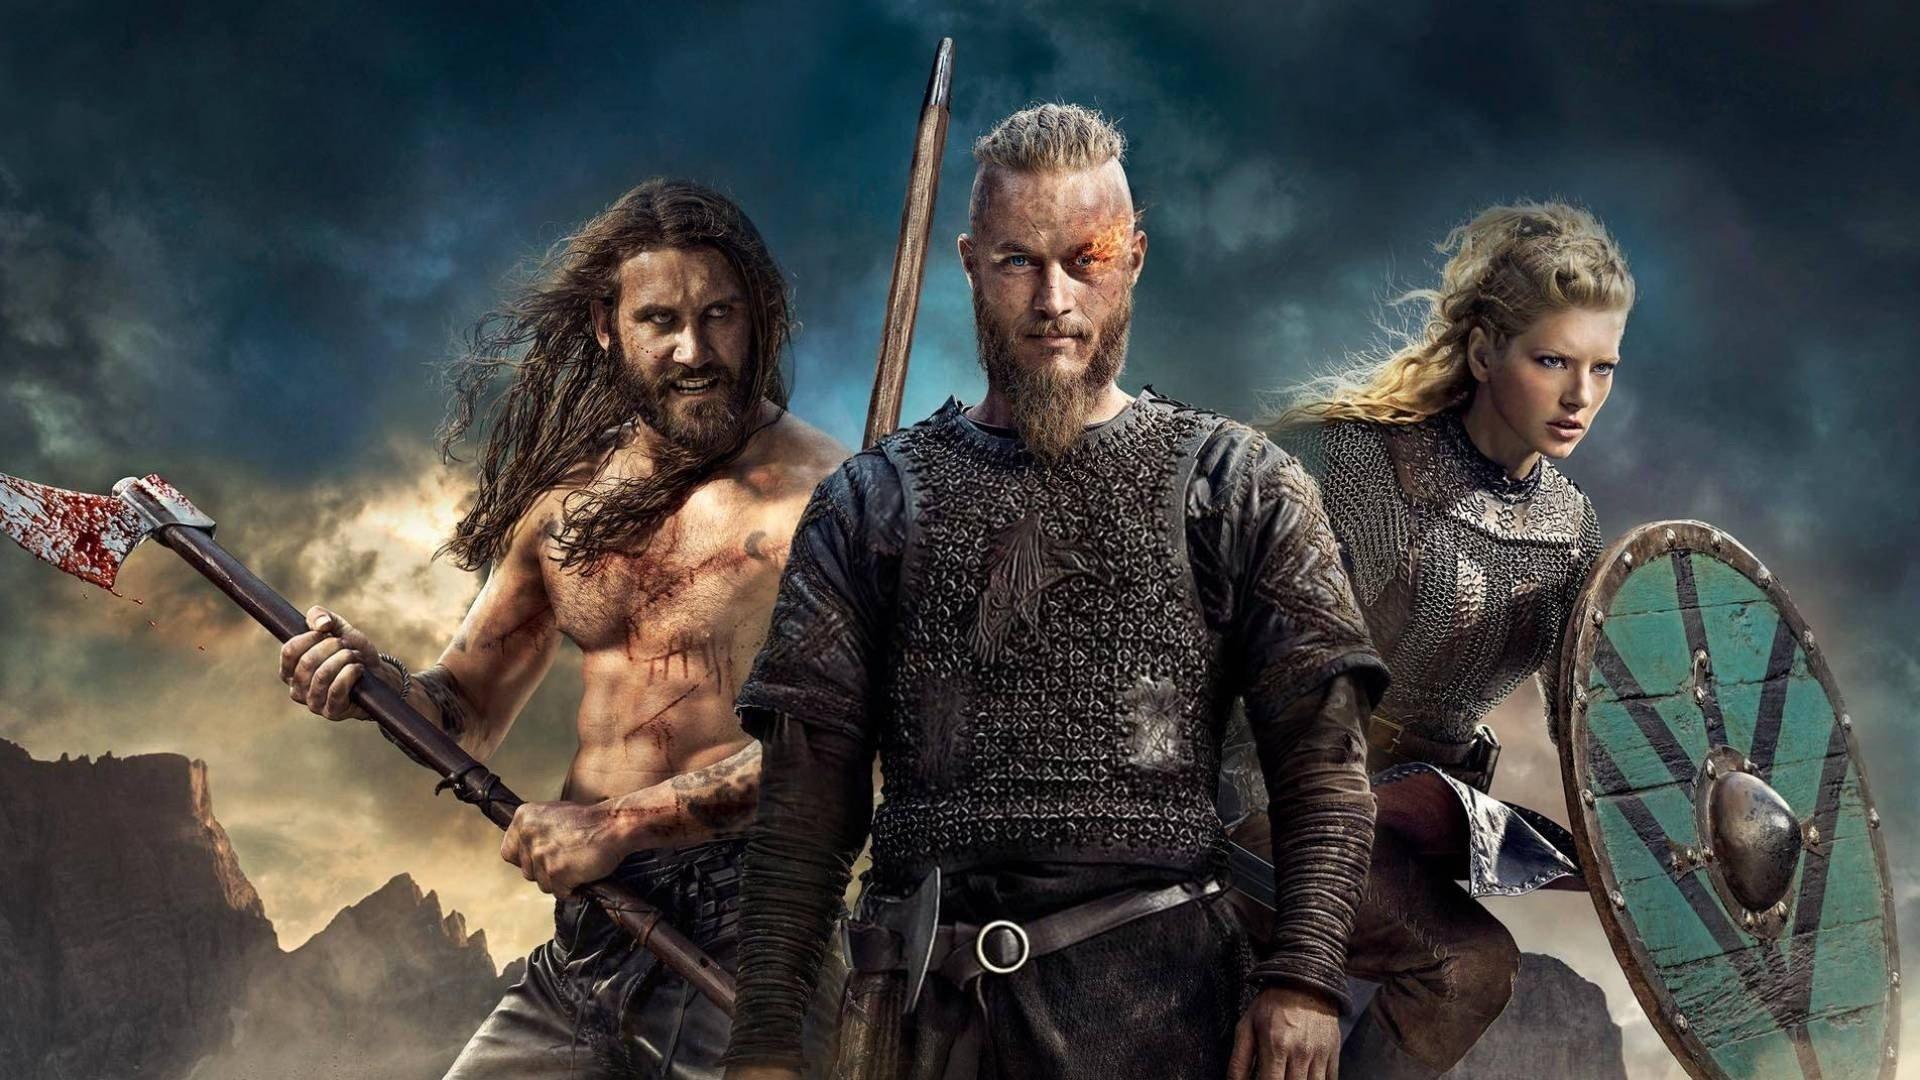 RAGNAR LOTHBROK WALLPAPER VIKINGS | King ragnar, Ragnar lothbrok, Ragnar  lothbrok vikings